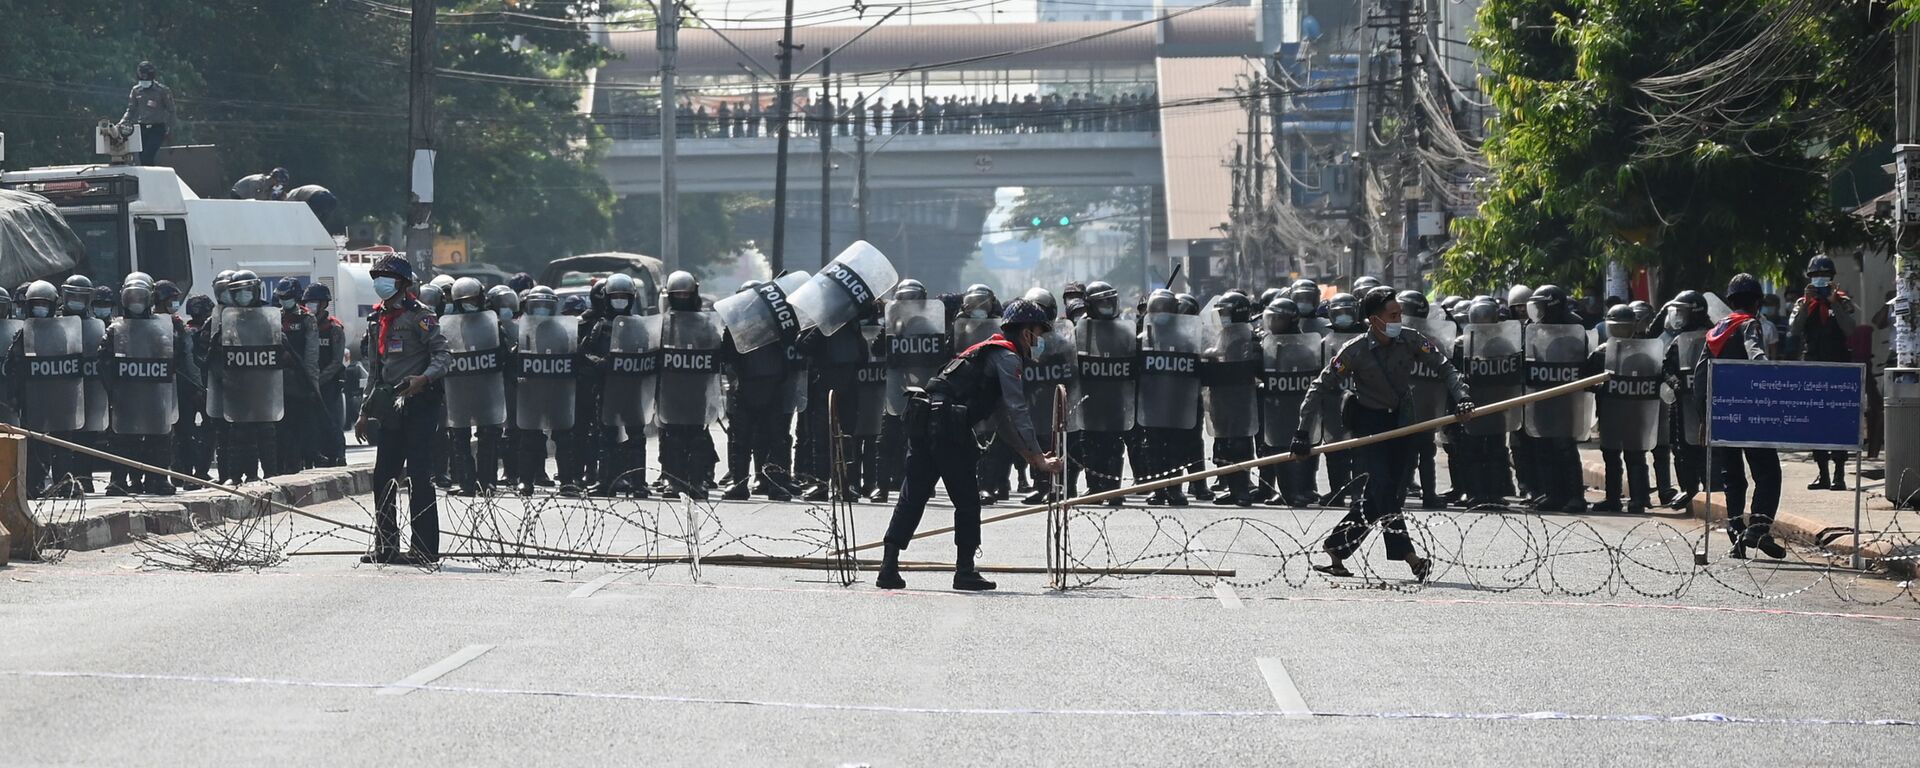 احتجاجات ضد الانقلاب العسكري في مدينة يانغون، ميانمار 6 فبراير 2021 - سبوتنيك عربي, 1920, 25.03.2021